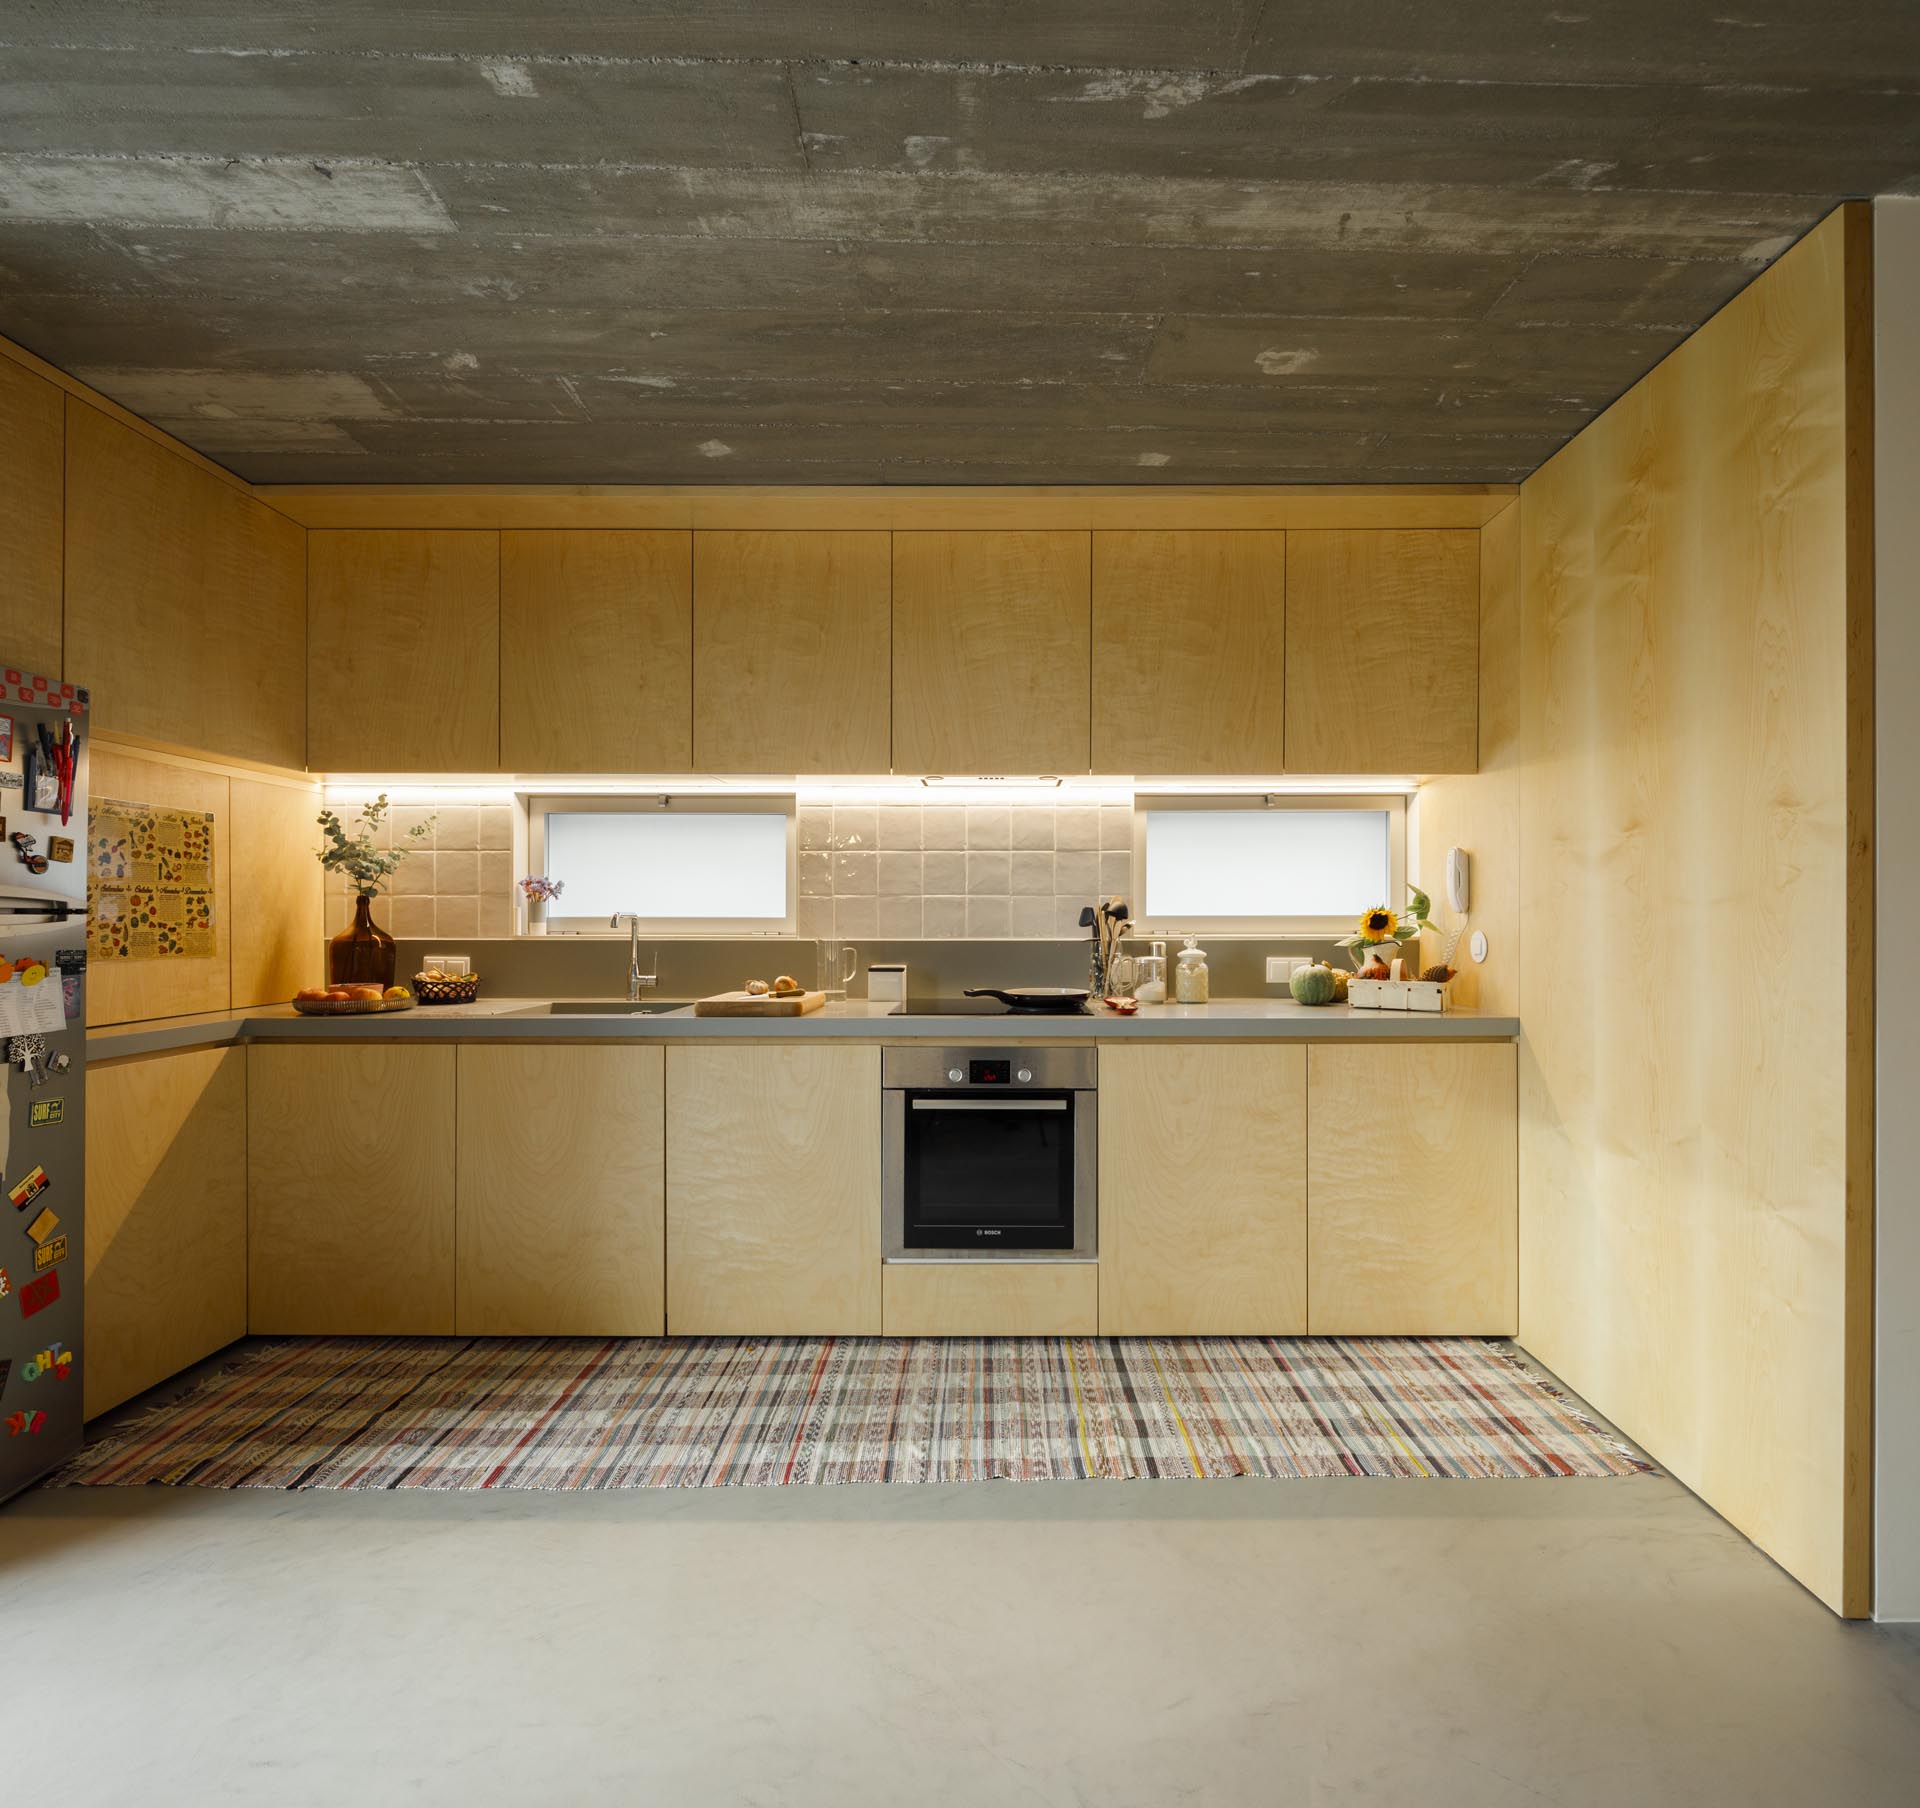 Nhà bếp bằng gỗ hiện đại với tủ không có phần cứng.